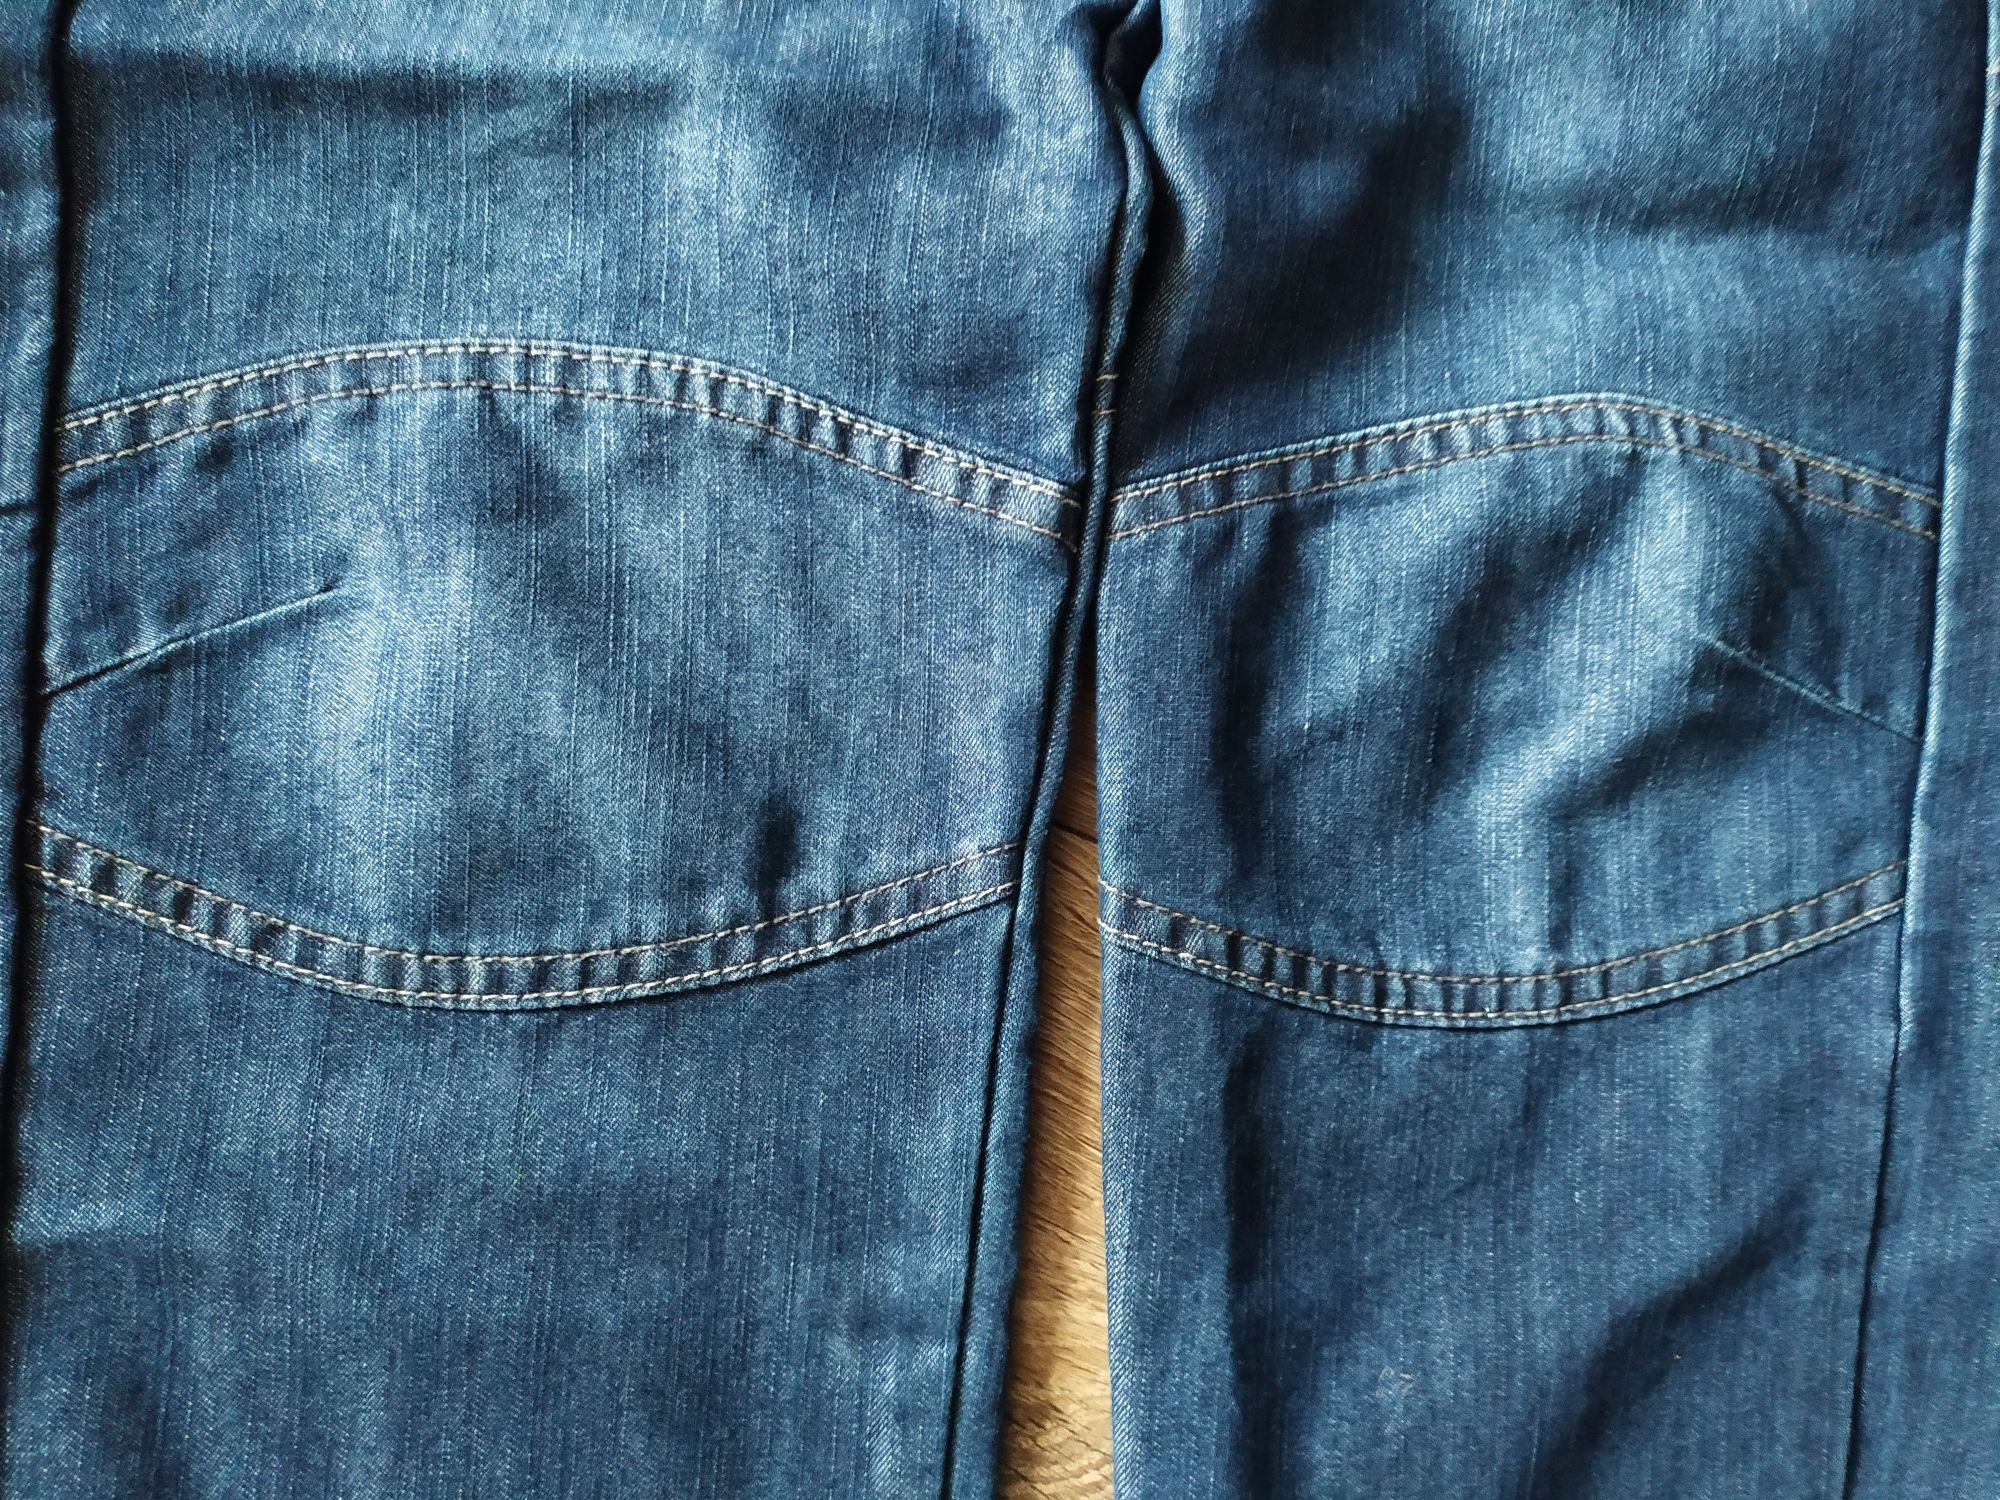 Spodnie dżinsy jeansy na gumce wiek 9 lat